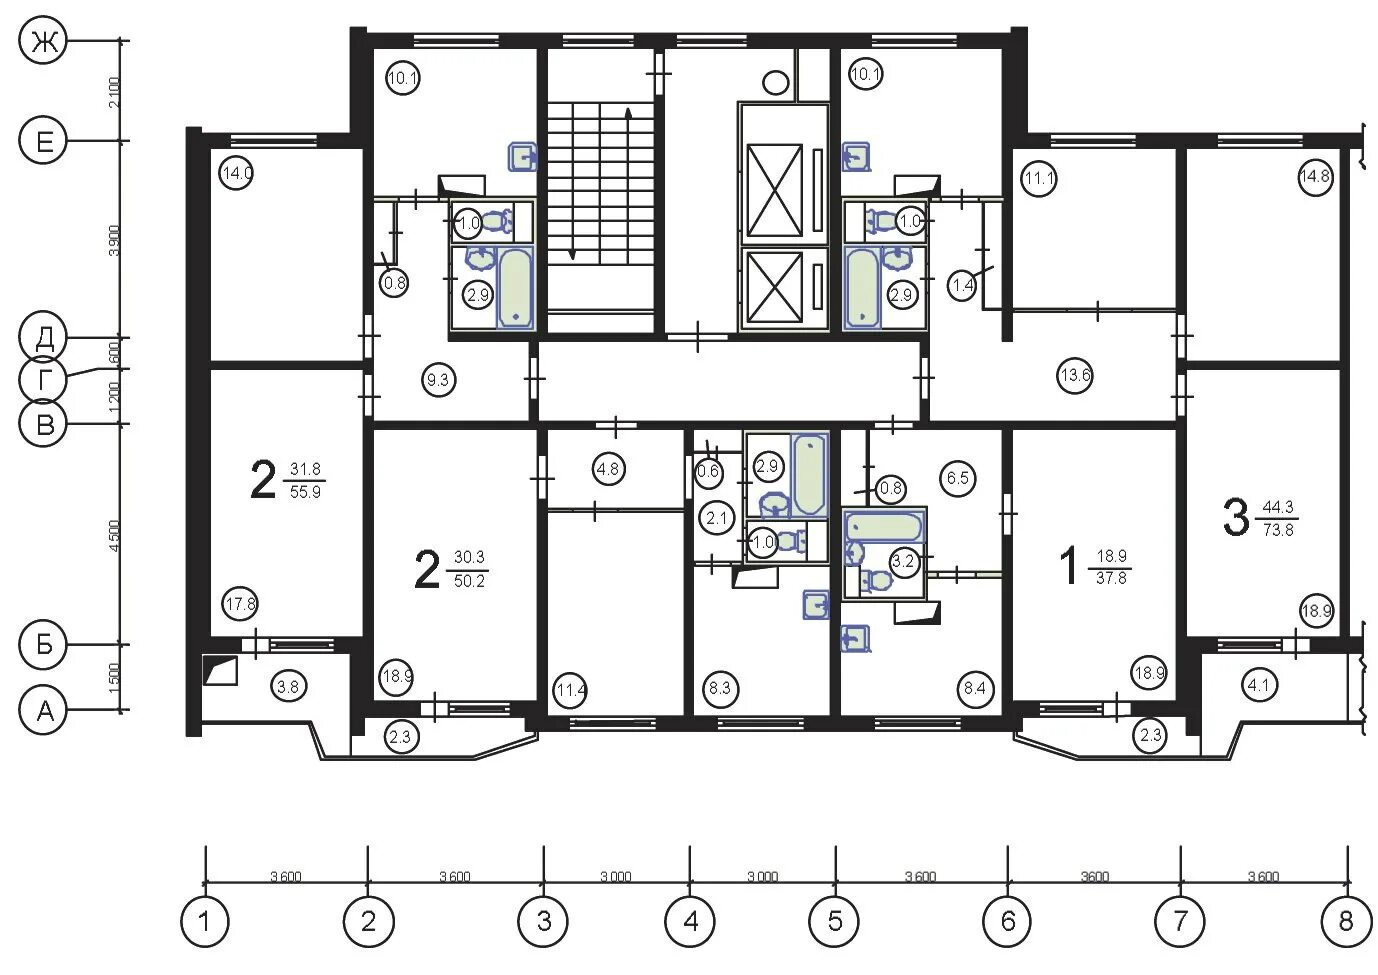 Планировка квартир п-44. Планировка п-44 двухкомнатная. П-44 планировка с размерами 2-х комнатная квартира.